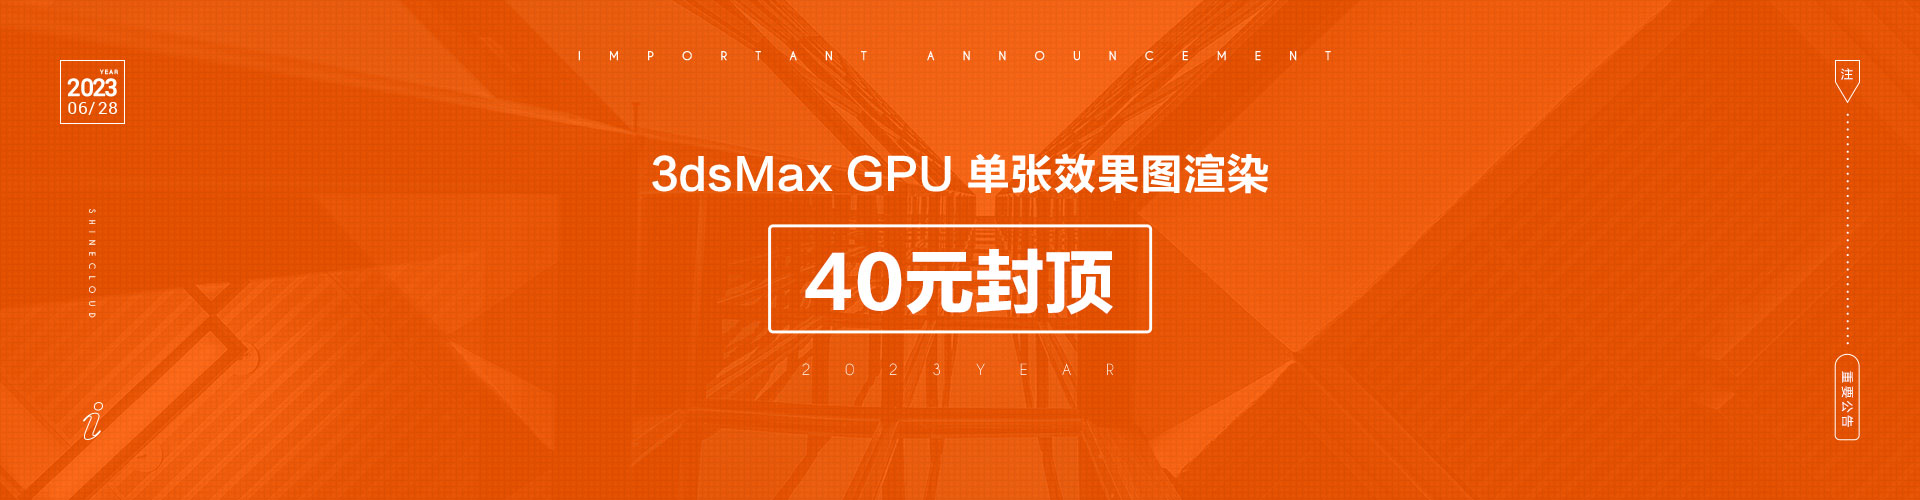 3dsMax GPU单张效果图渲染40元封顶